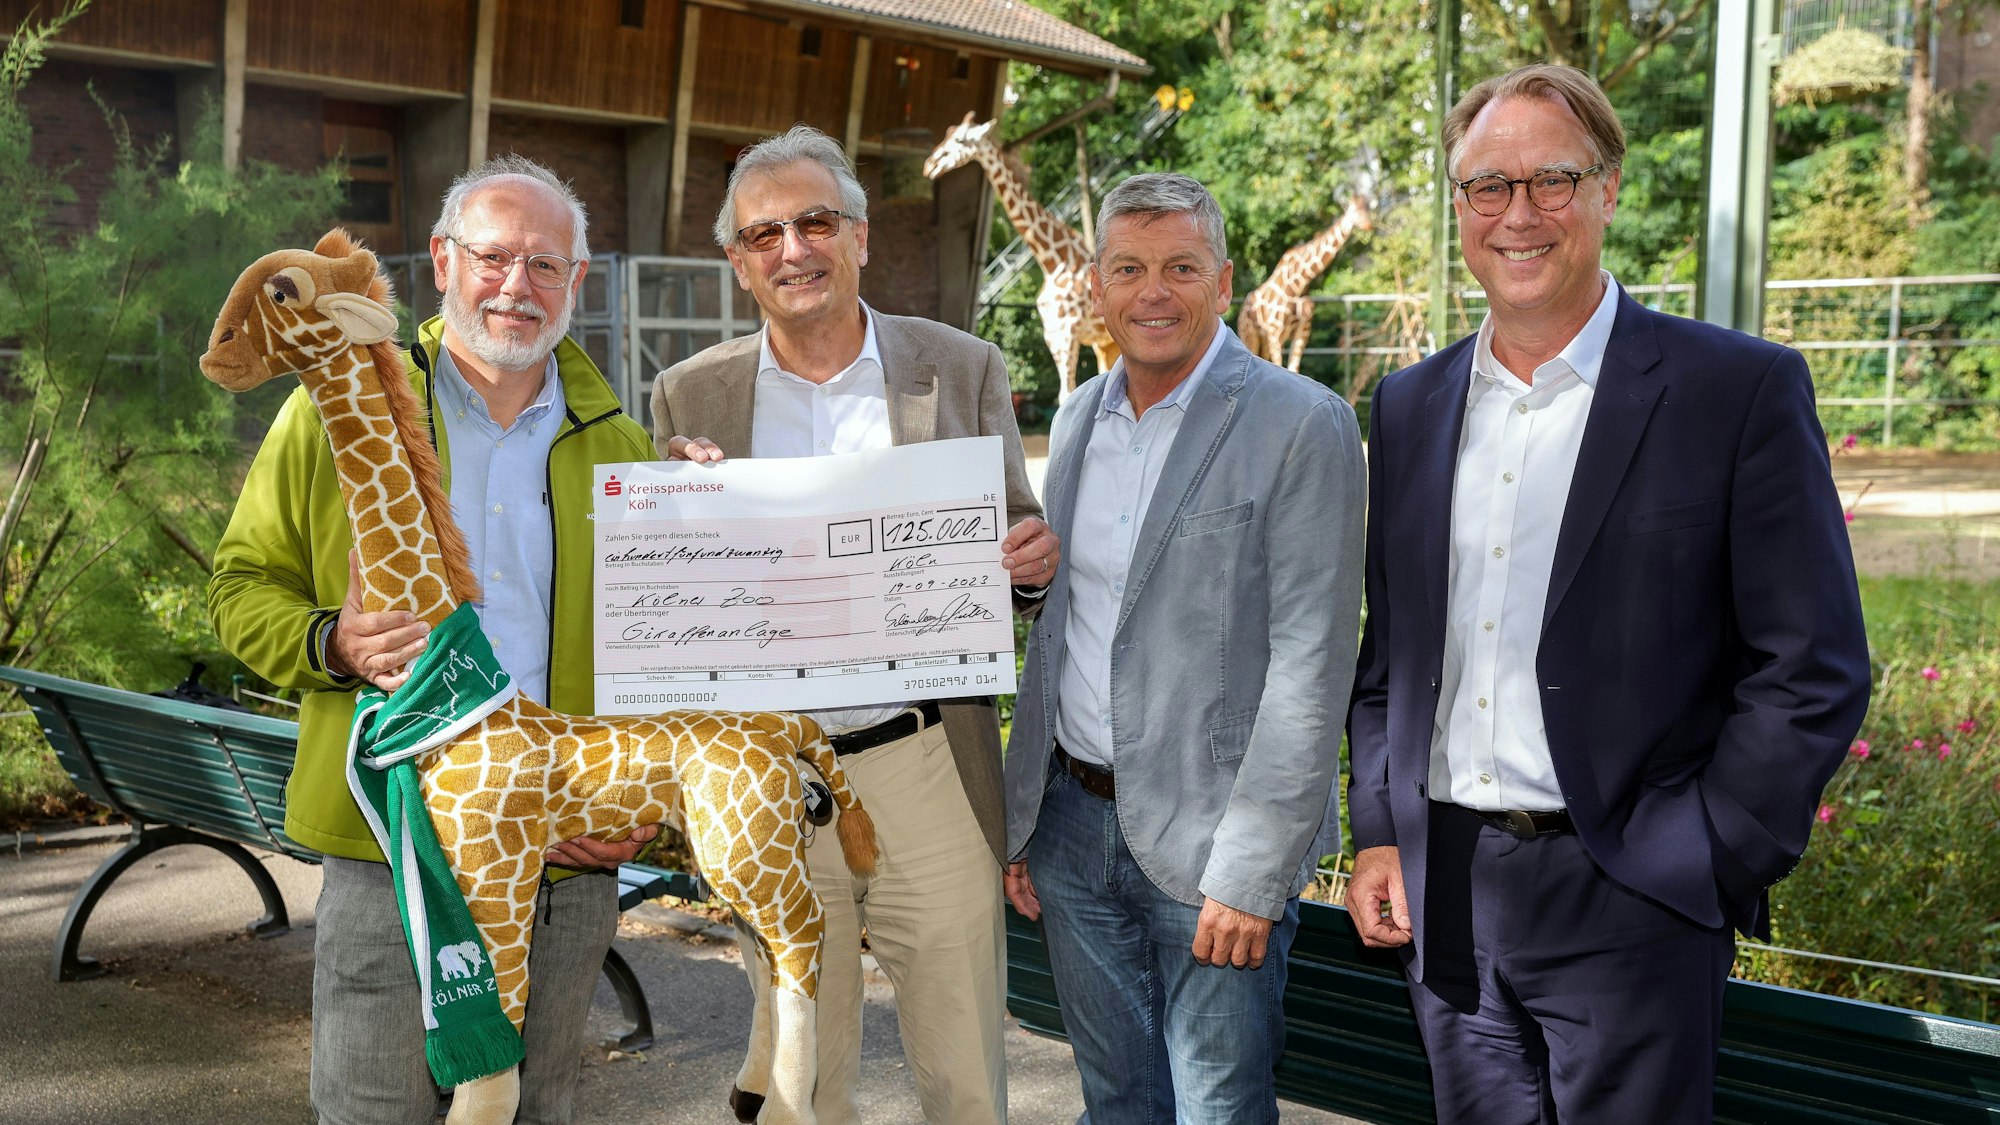 Vier Männer zeigen einen Spendenscheck vor der großen Giraffenanlage im Kölner Zoo.